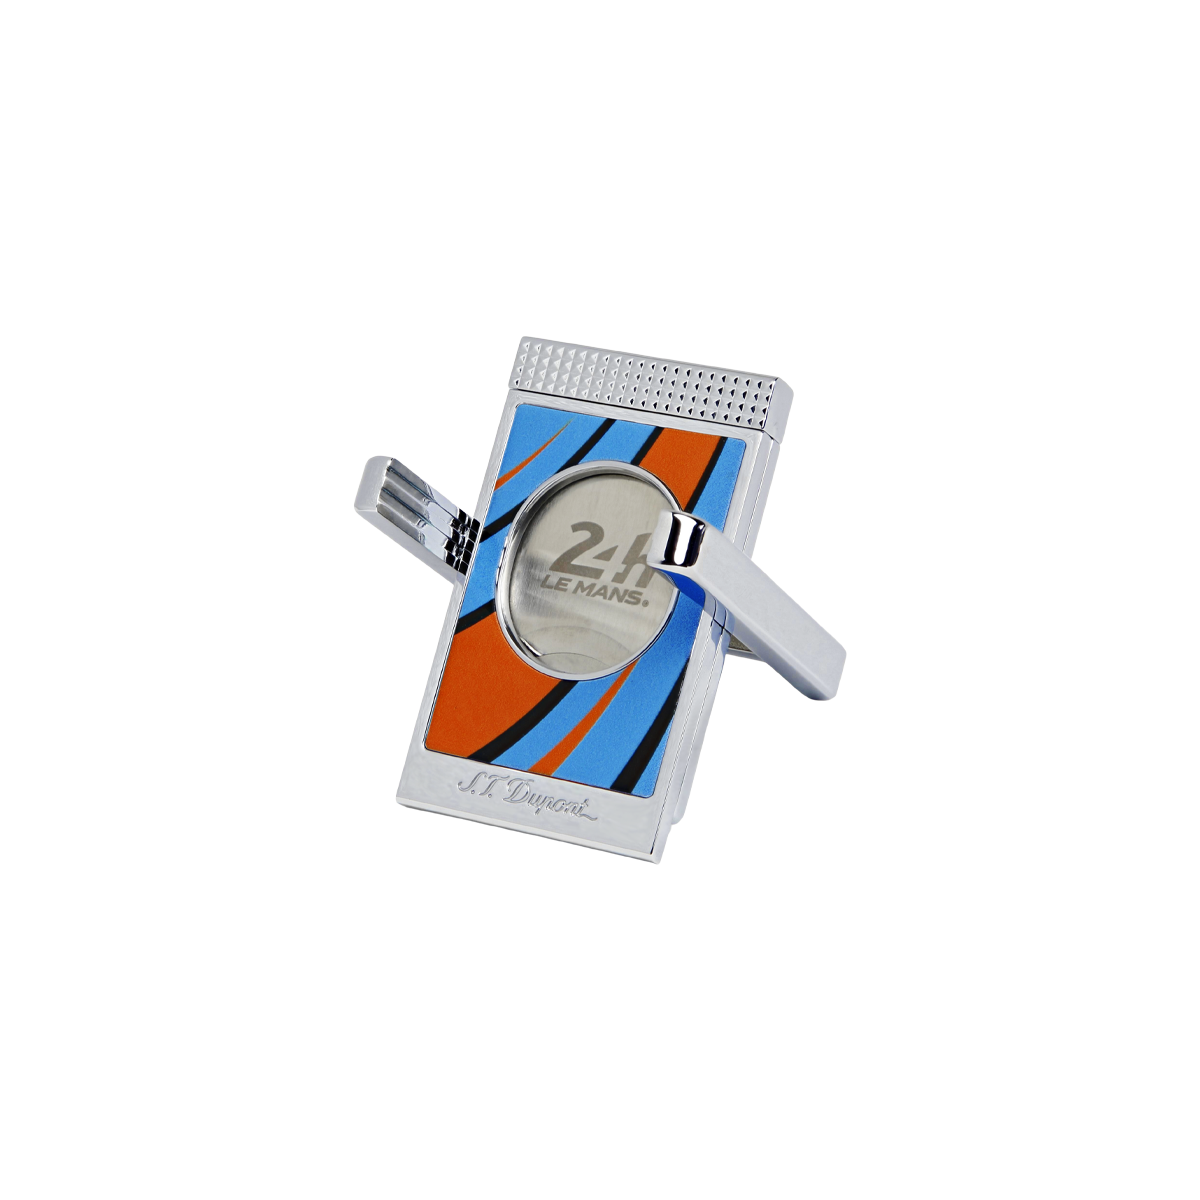 Гильотина для сигар 24h Le Mans 3489 Цвет Многоцветный Отделка хромом и лаком | S.T. Dupont